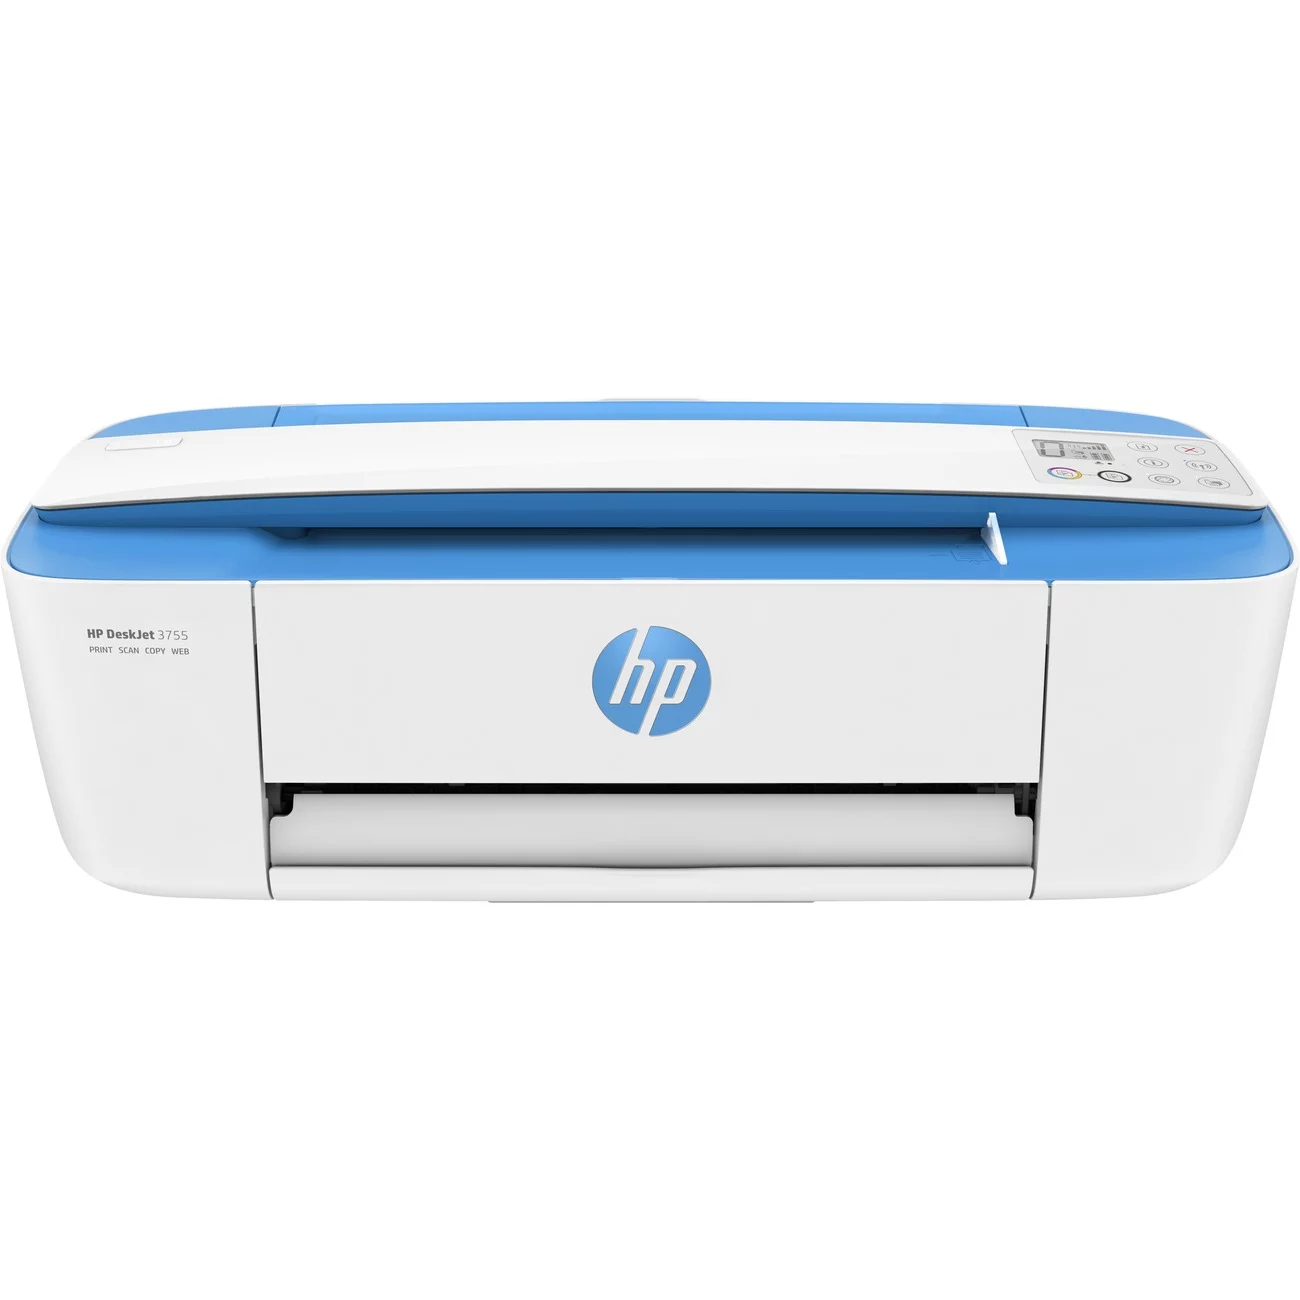 DeskJet 3700 All-in-One Printer series